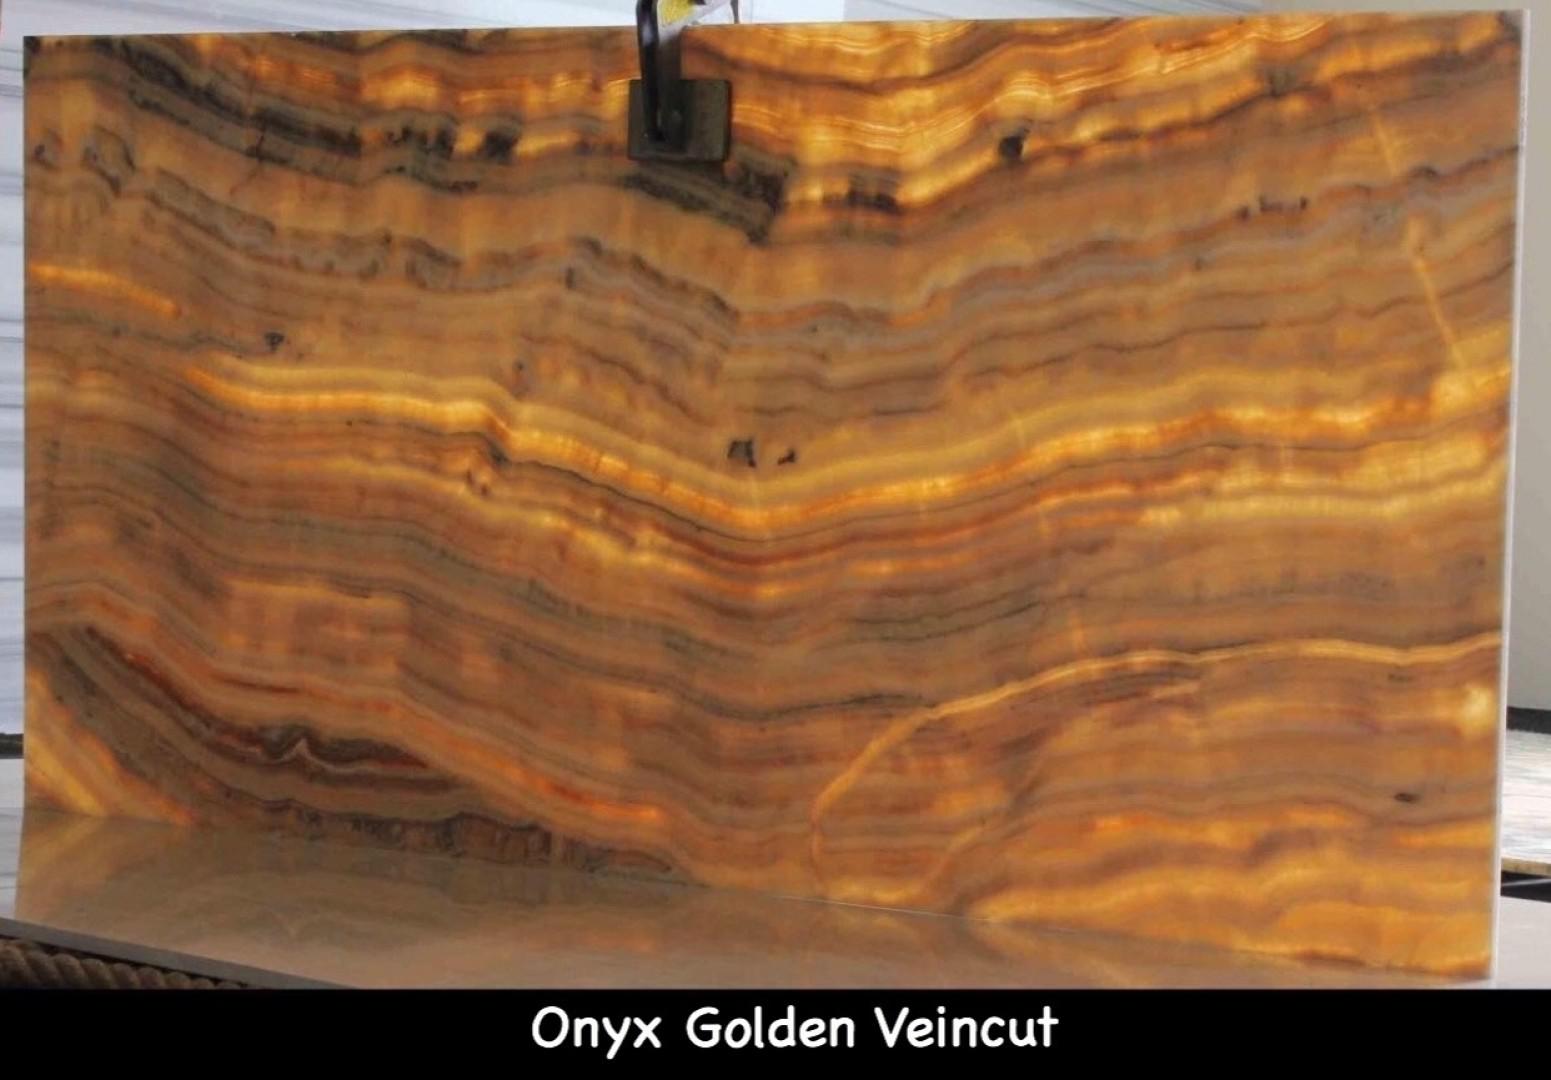 Onyx Golden Veincut from JSP